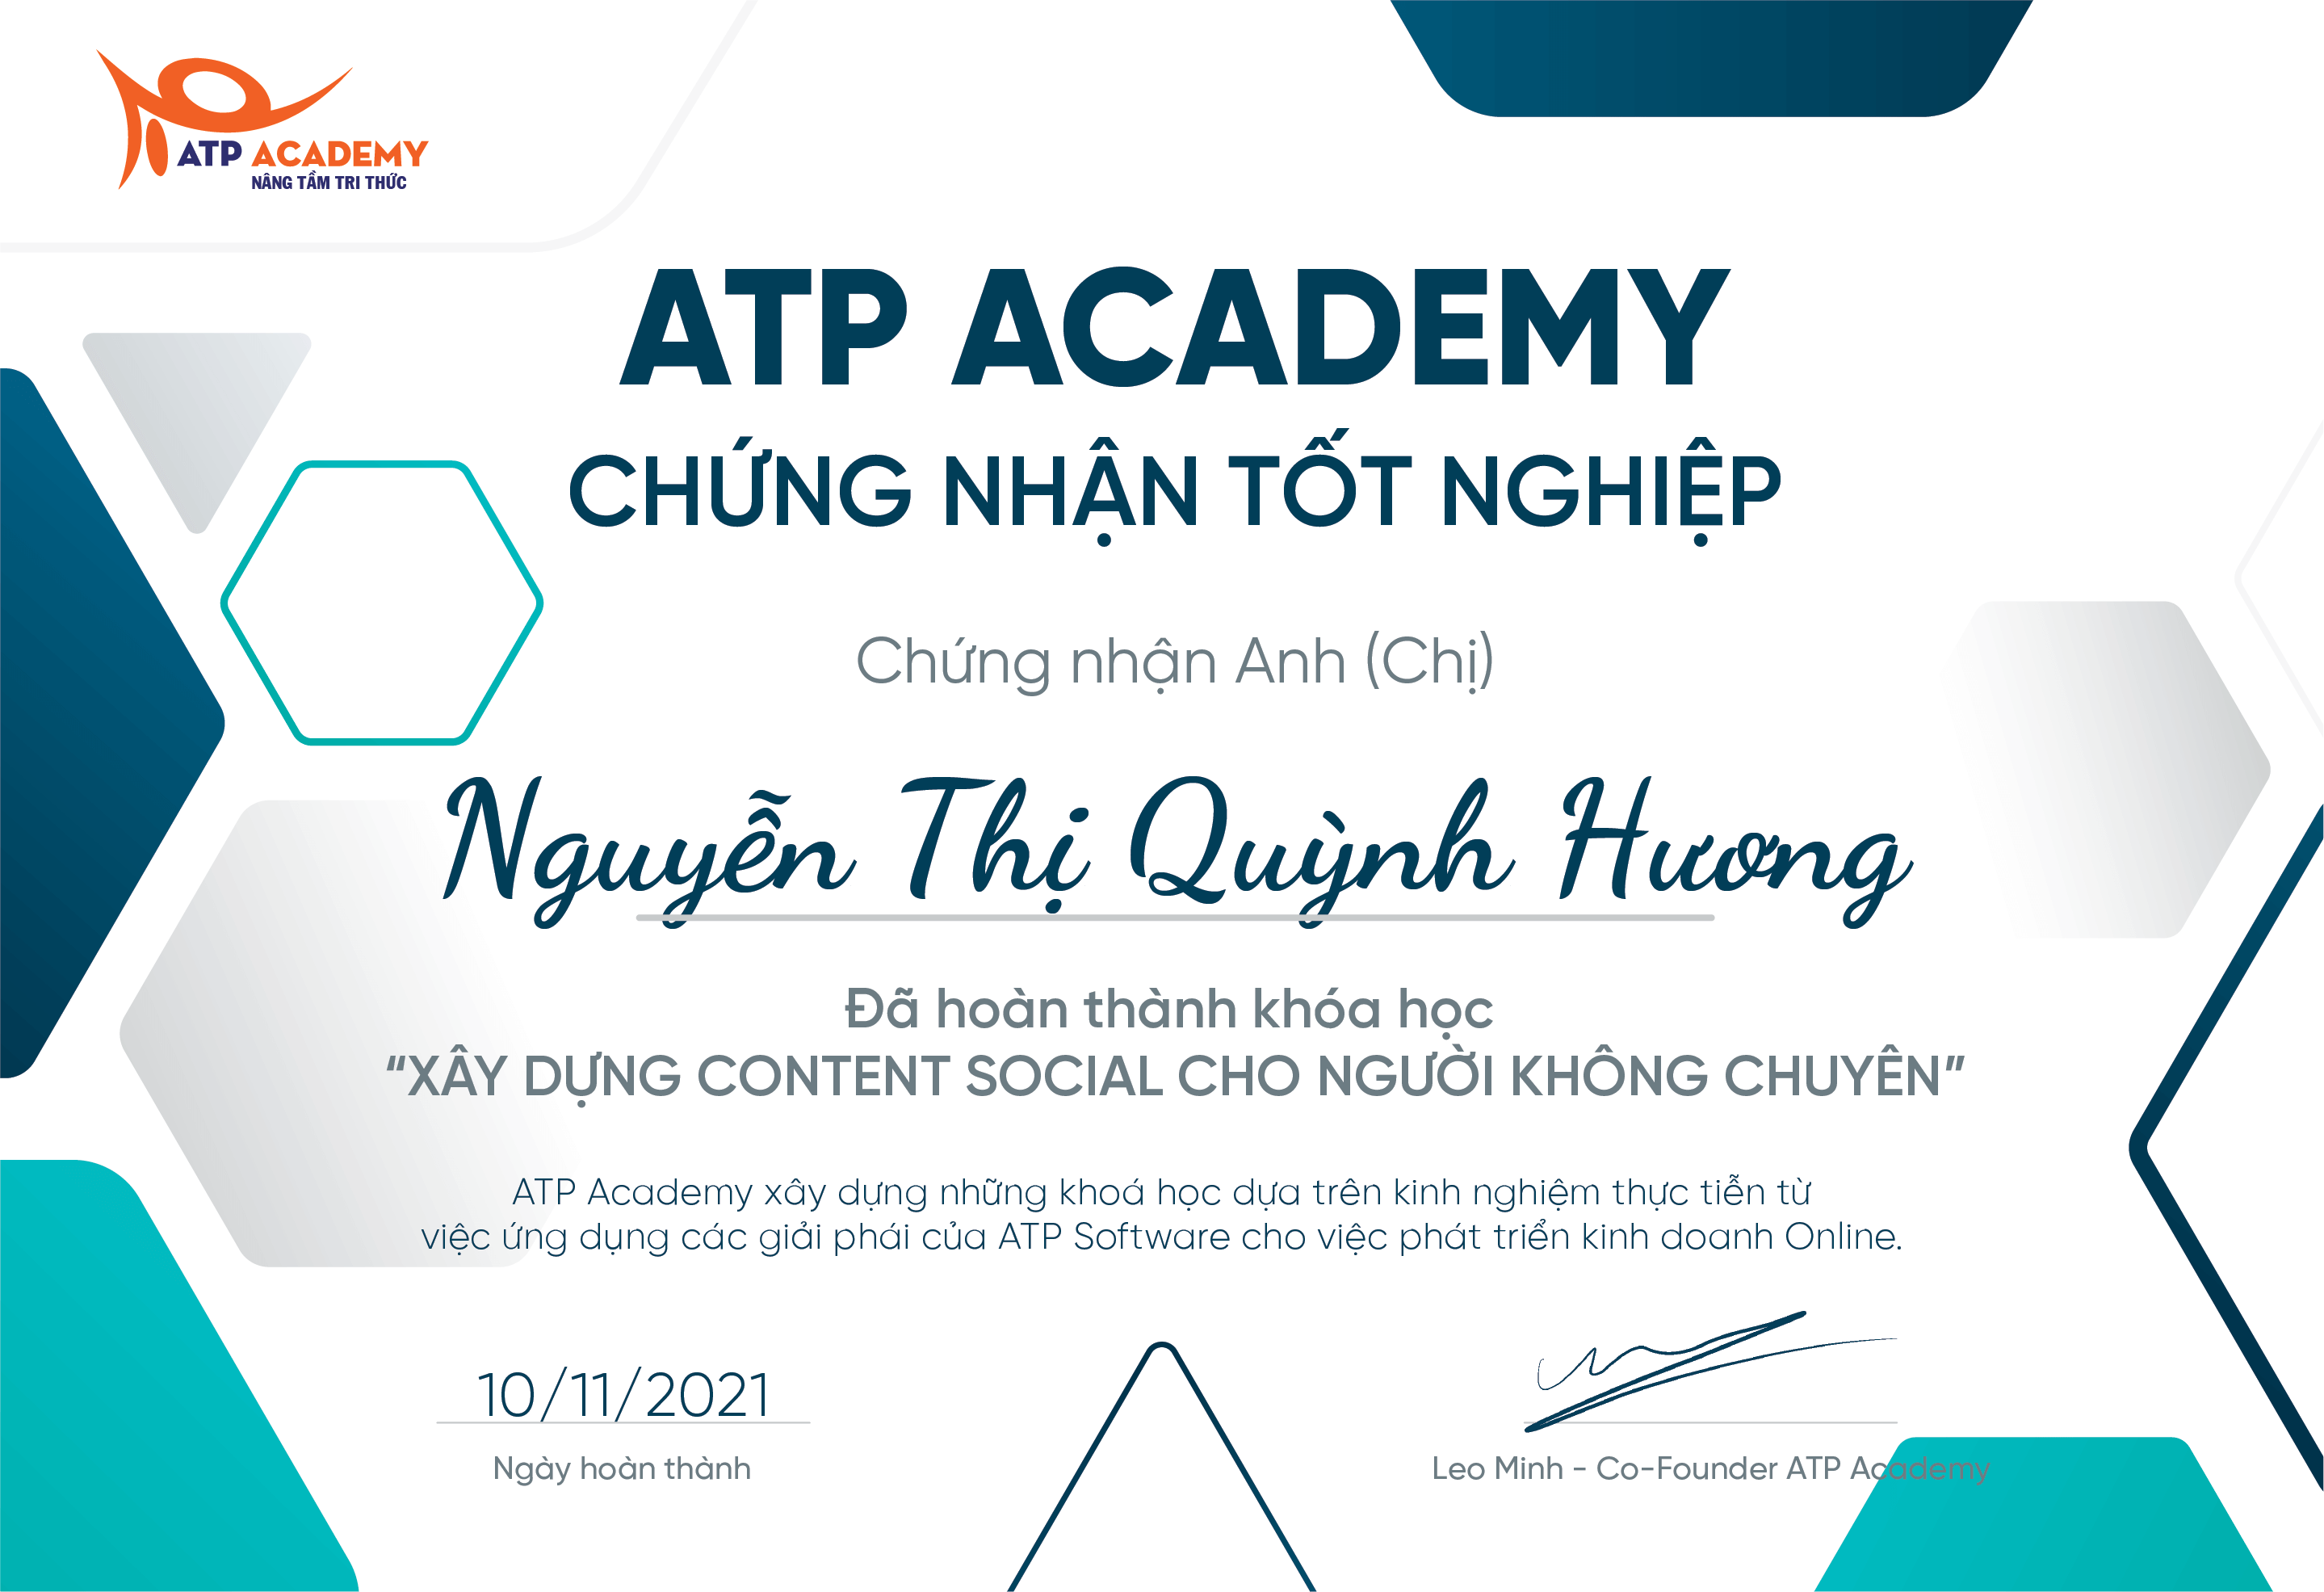 Nguyễn Thị Quỳnh Hương